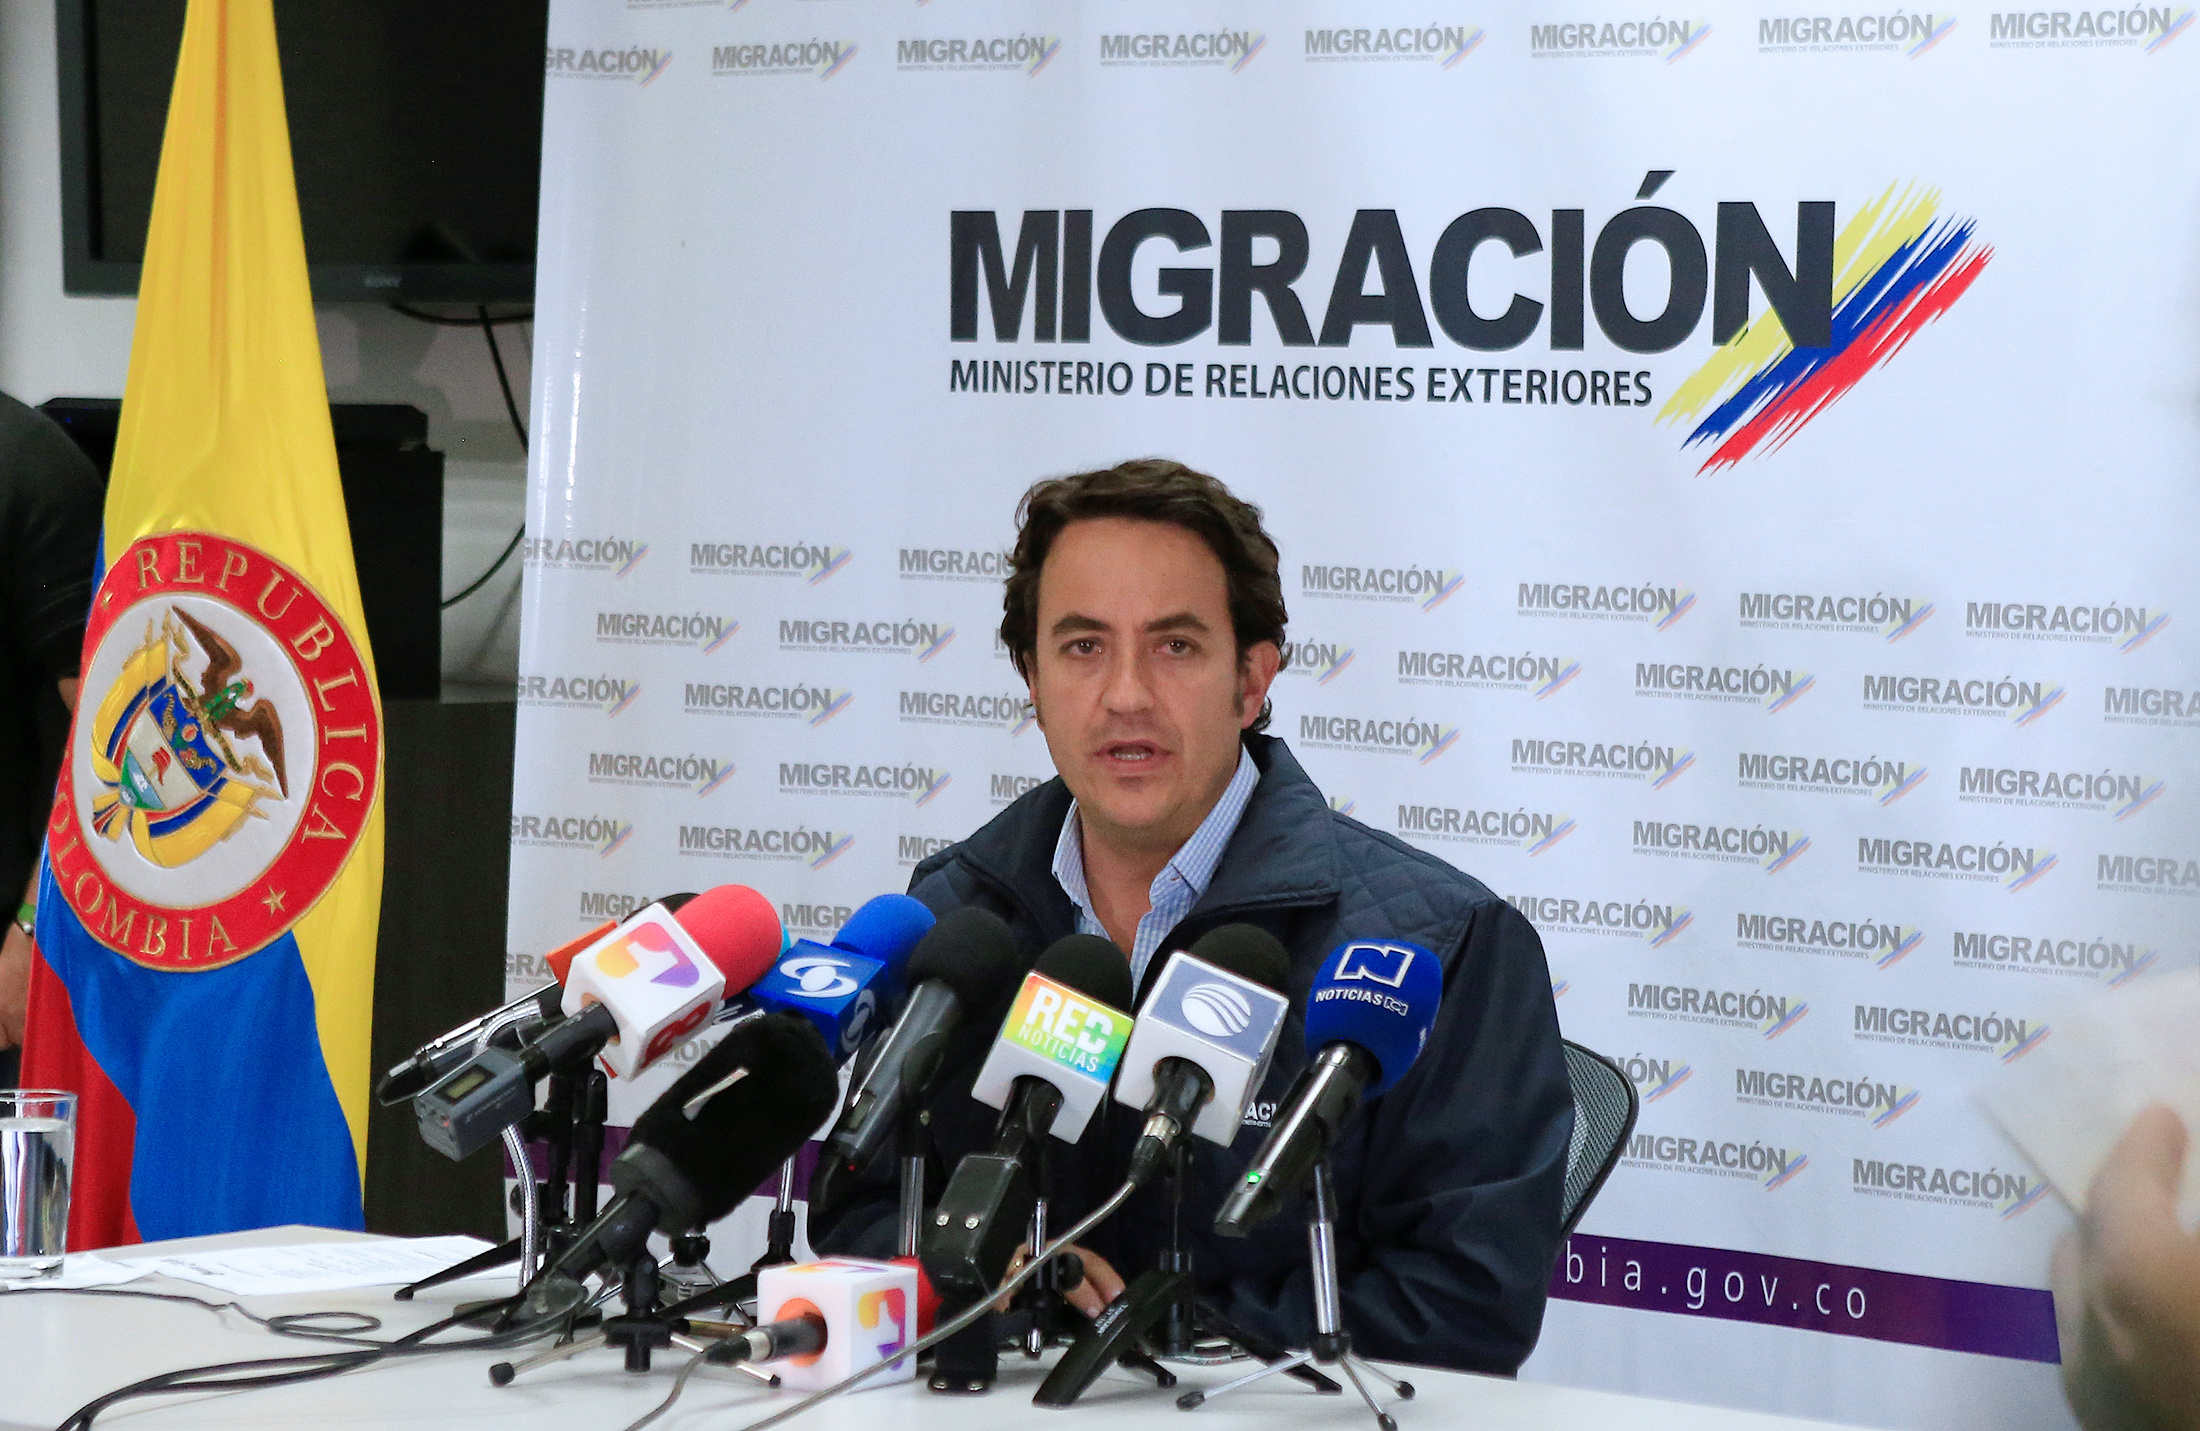 Migración Colombia expulsó a un venezolano y un peruano por robar y agredir a ciudadanos en Bogotá